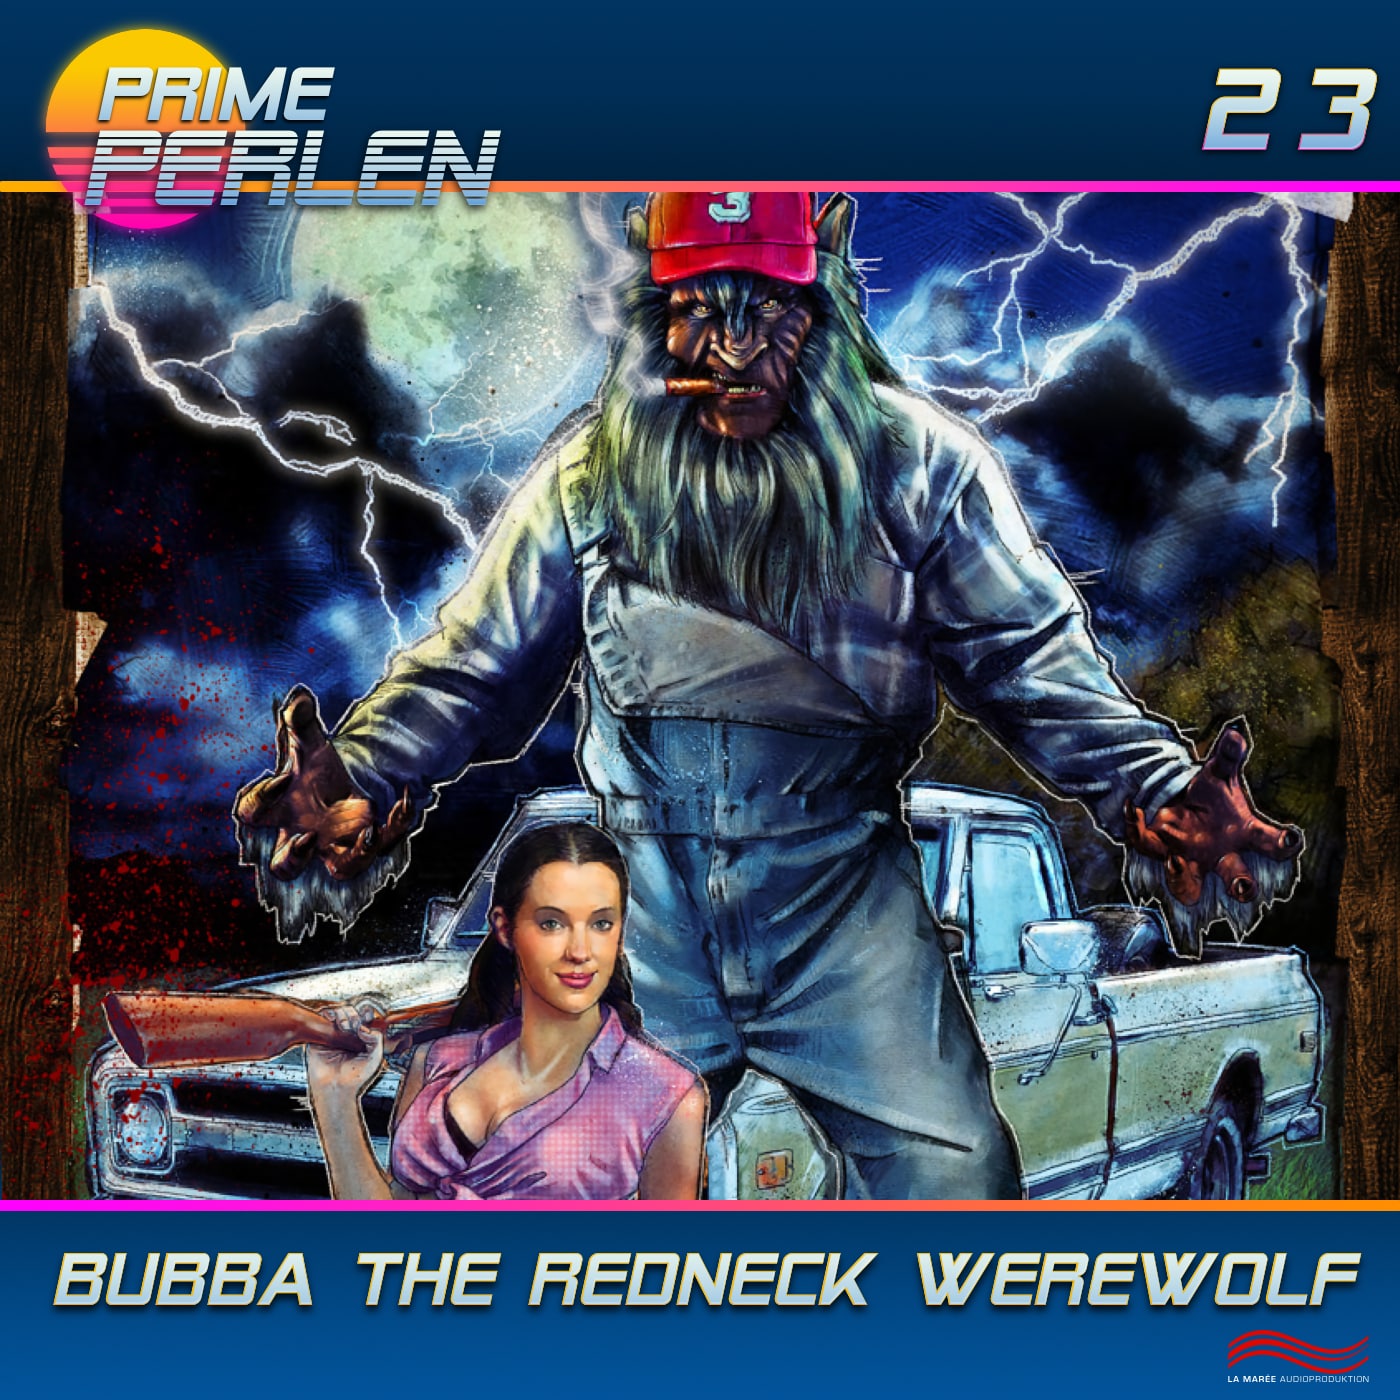 Prime Perlen #23 - Bubba, The Redneck Werewolf